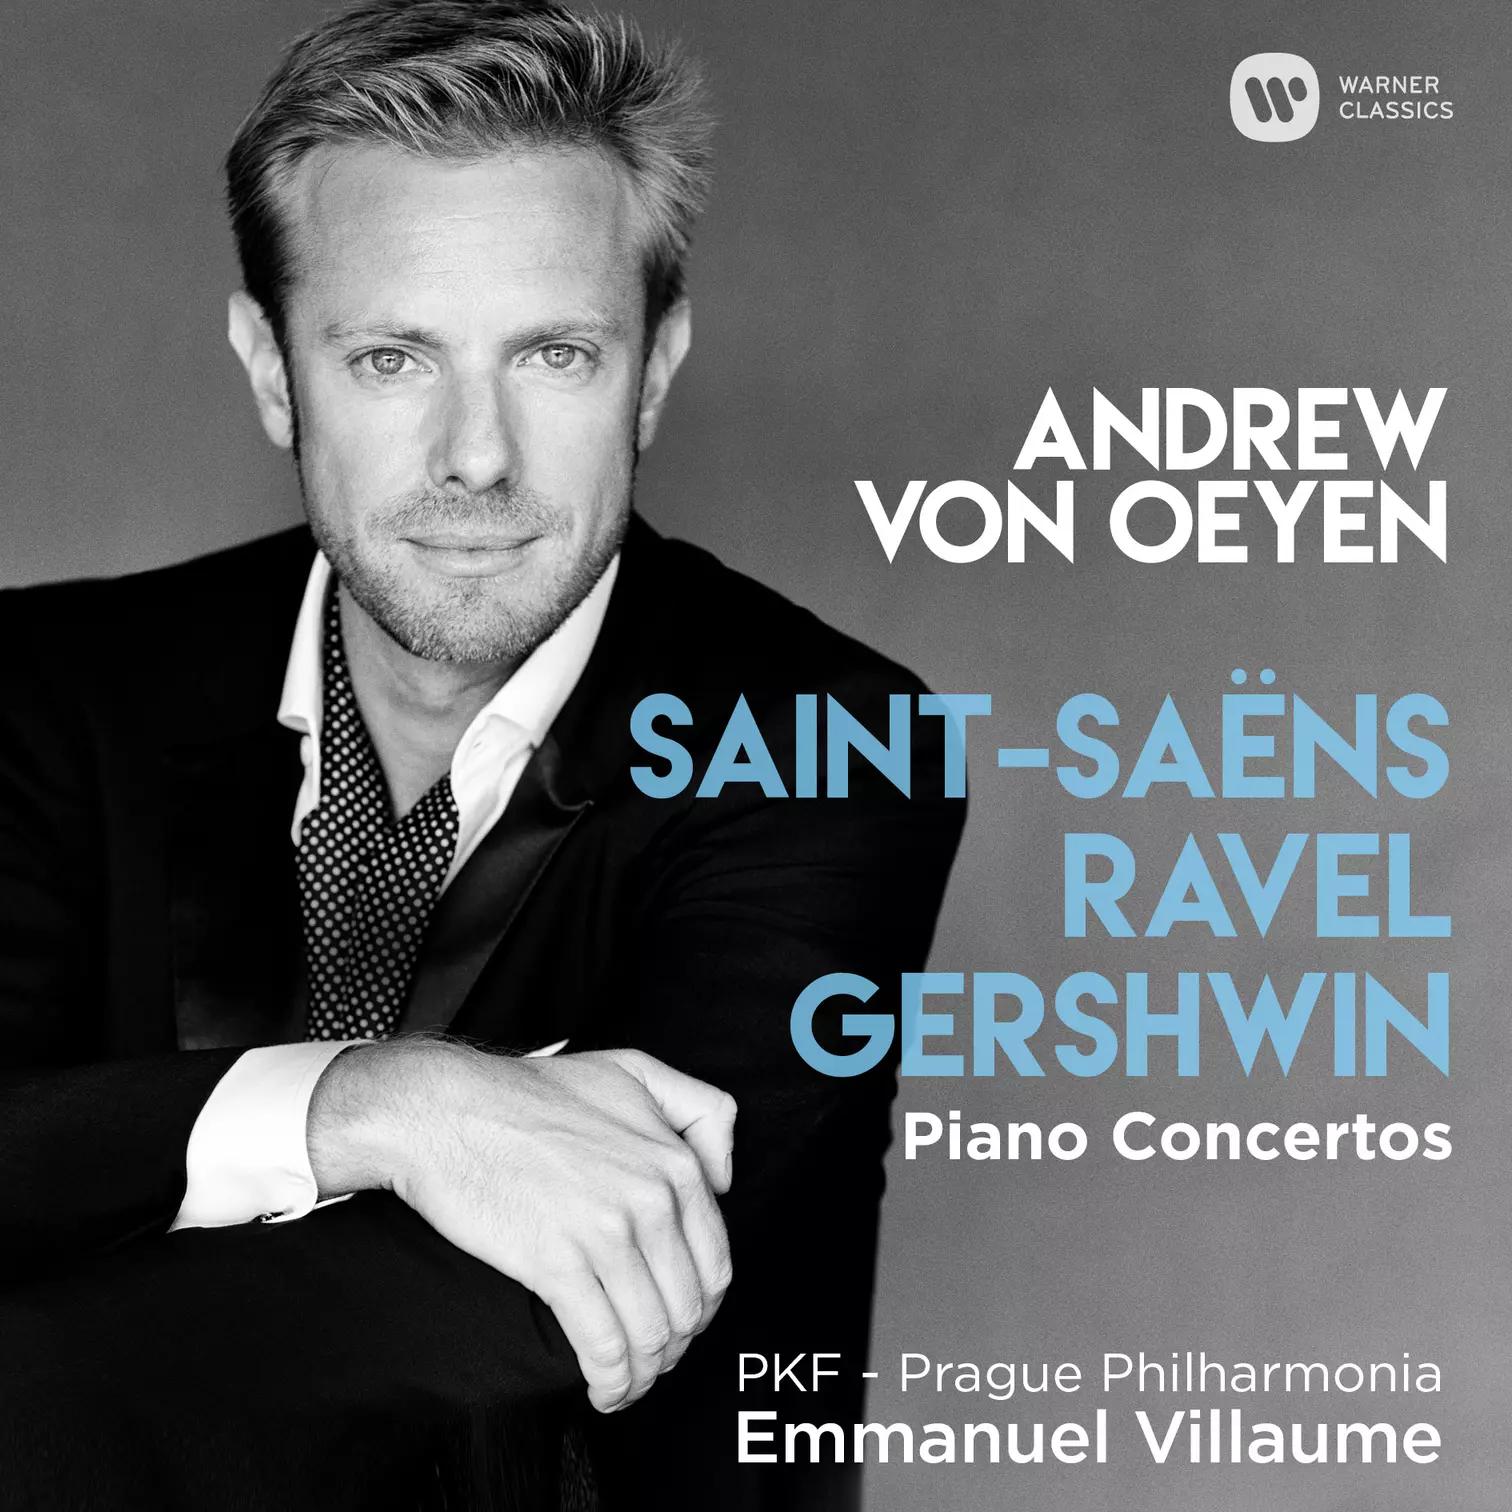 Saint-Saëns Ravel Gershwin Piano Concertos